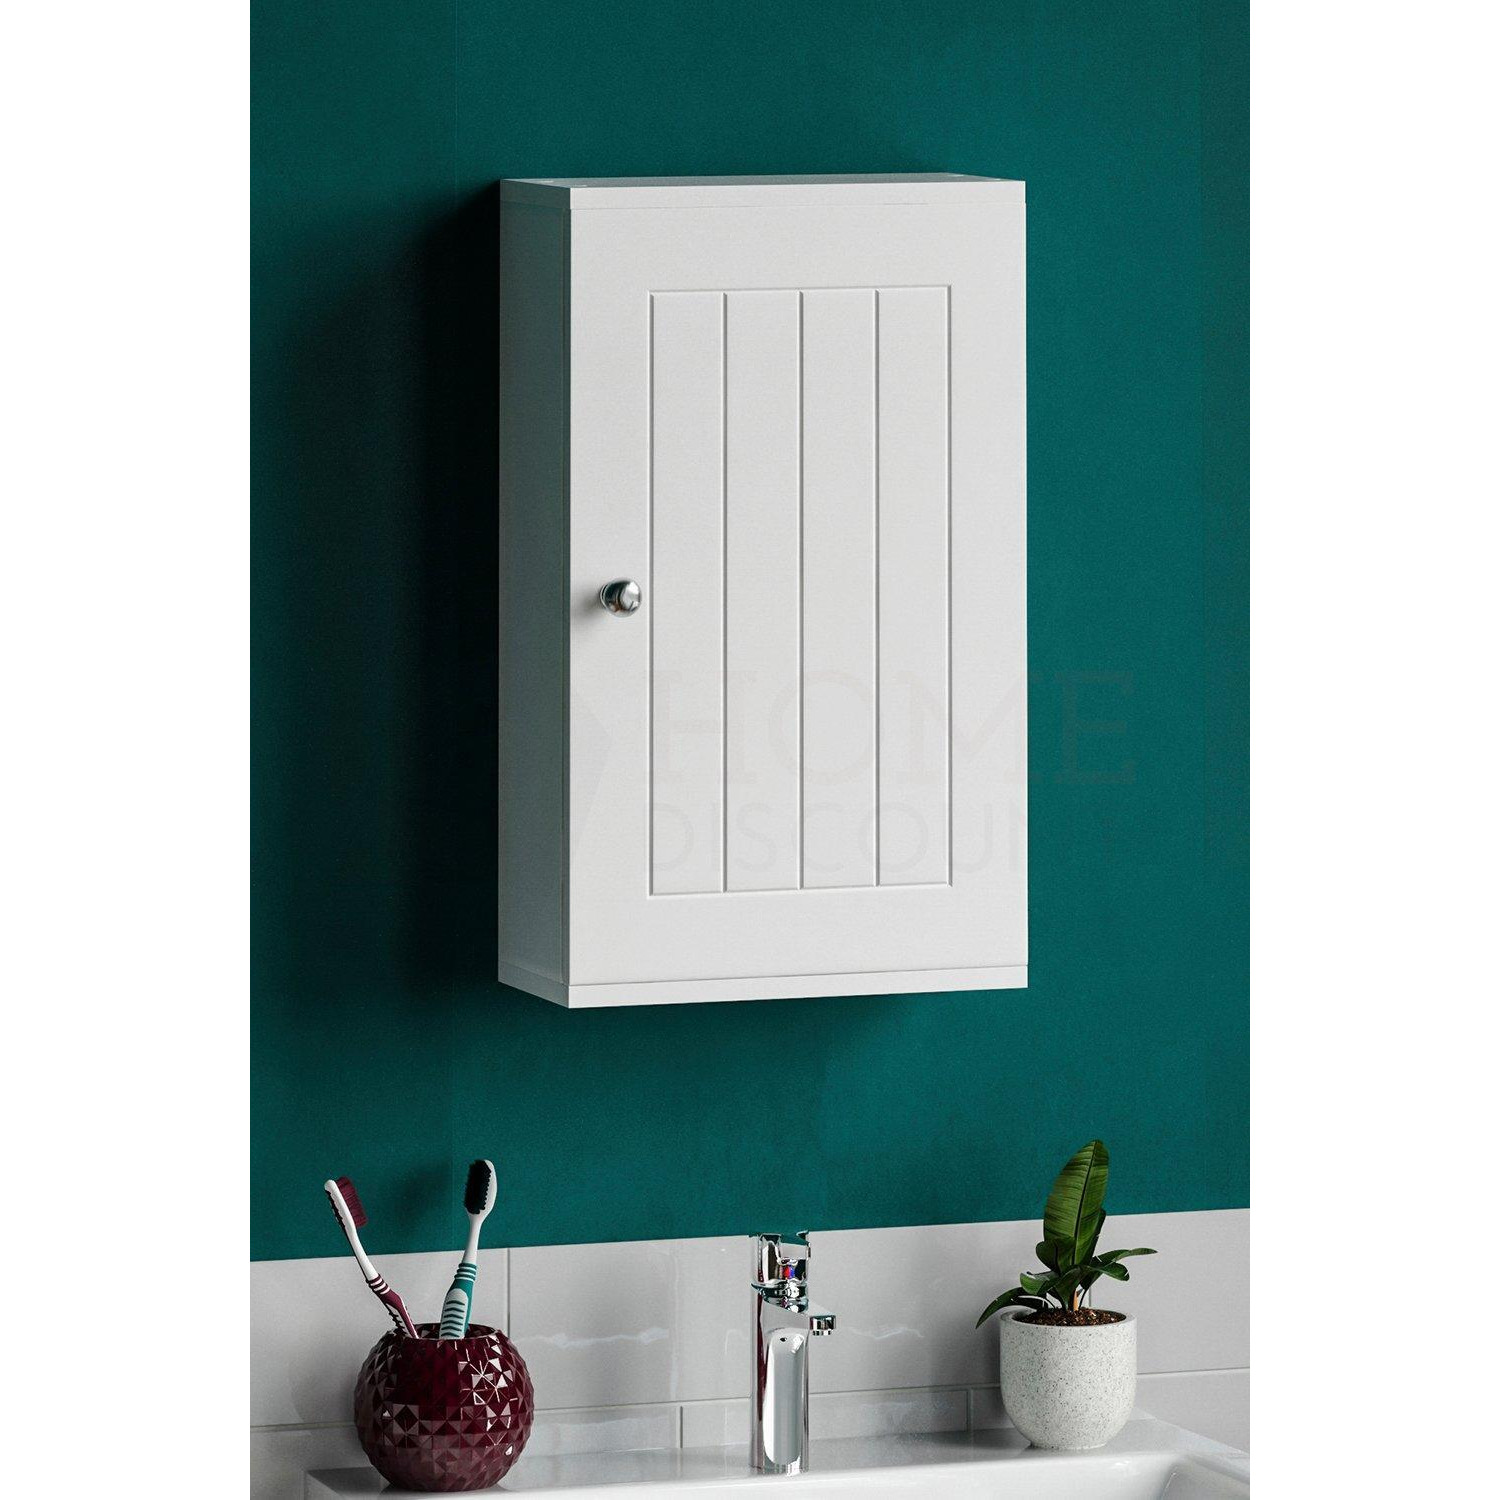 Bath Vida Priano 1 Door Wall Cabinet With Shelves Bathroom Storage 500 x 300 x 140 mm - image 1